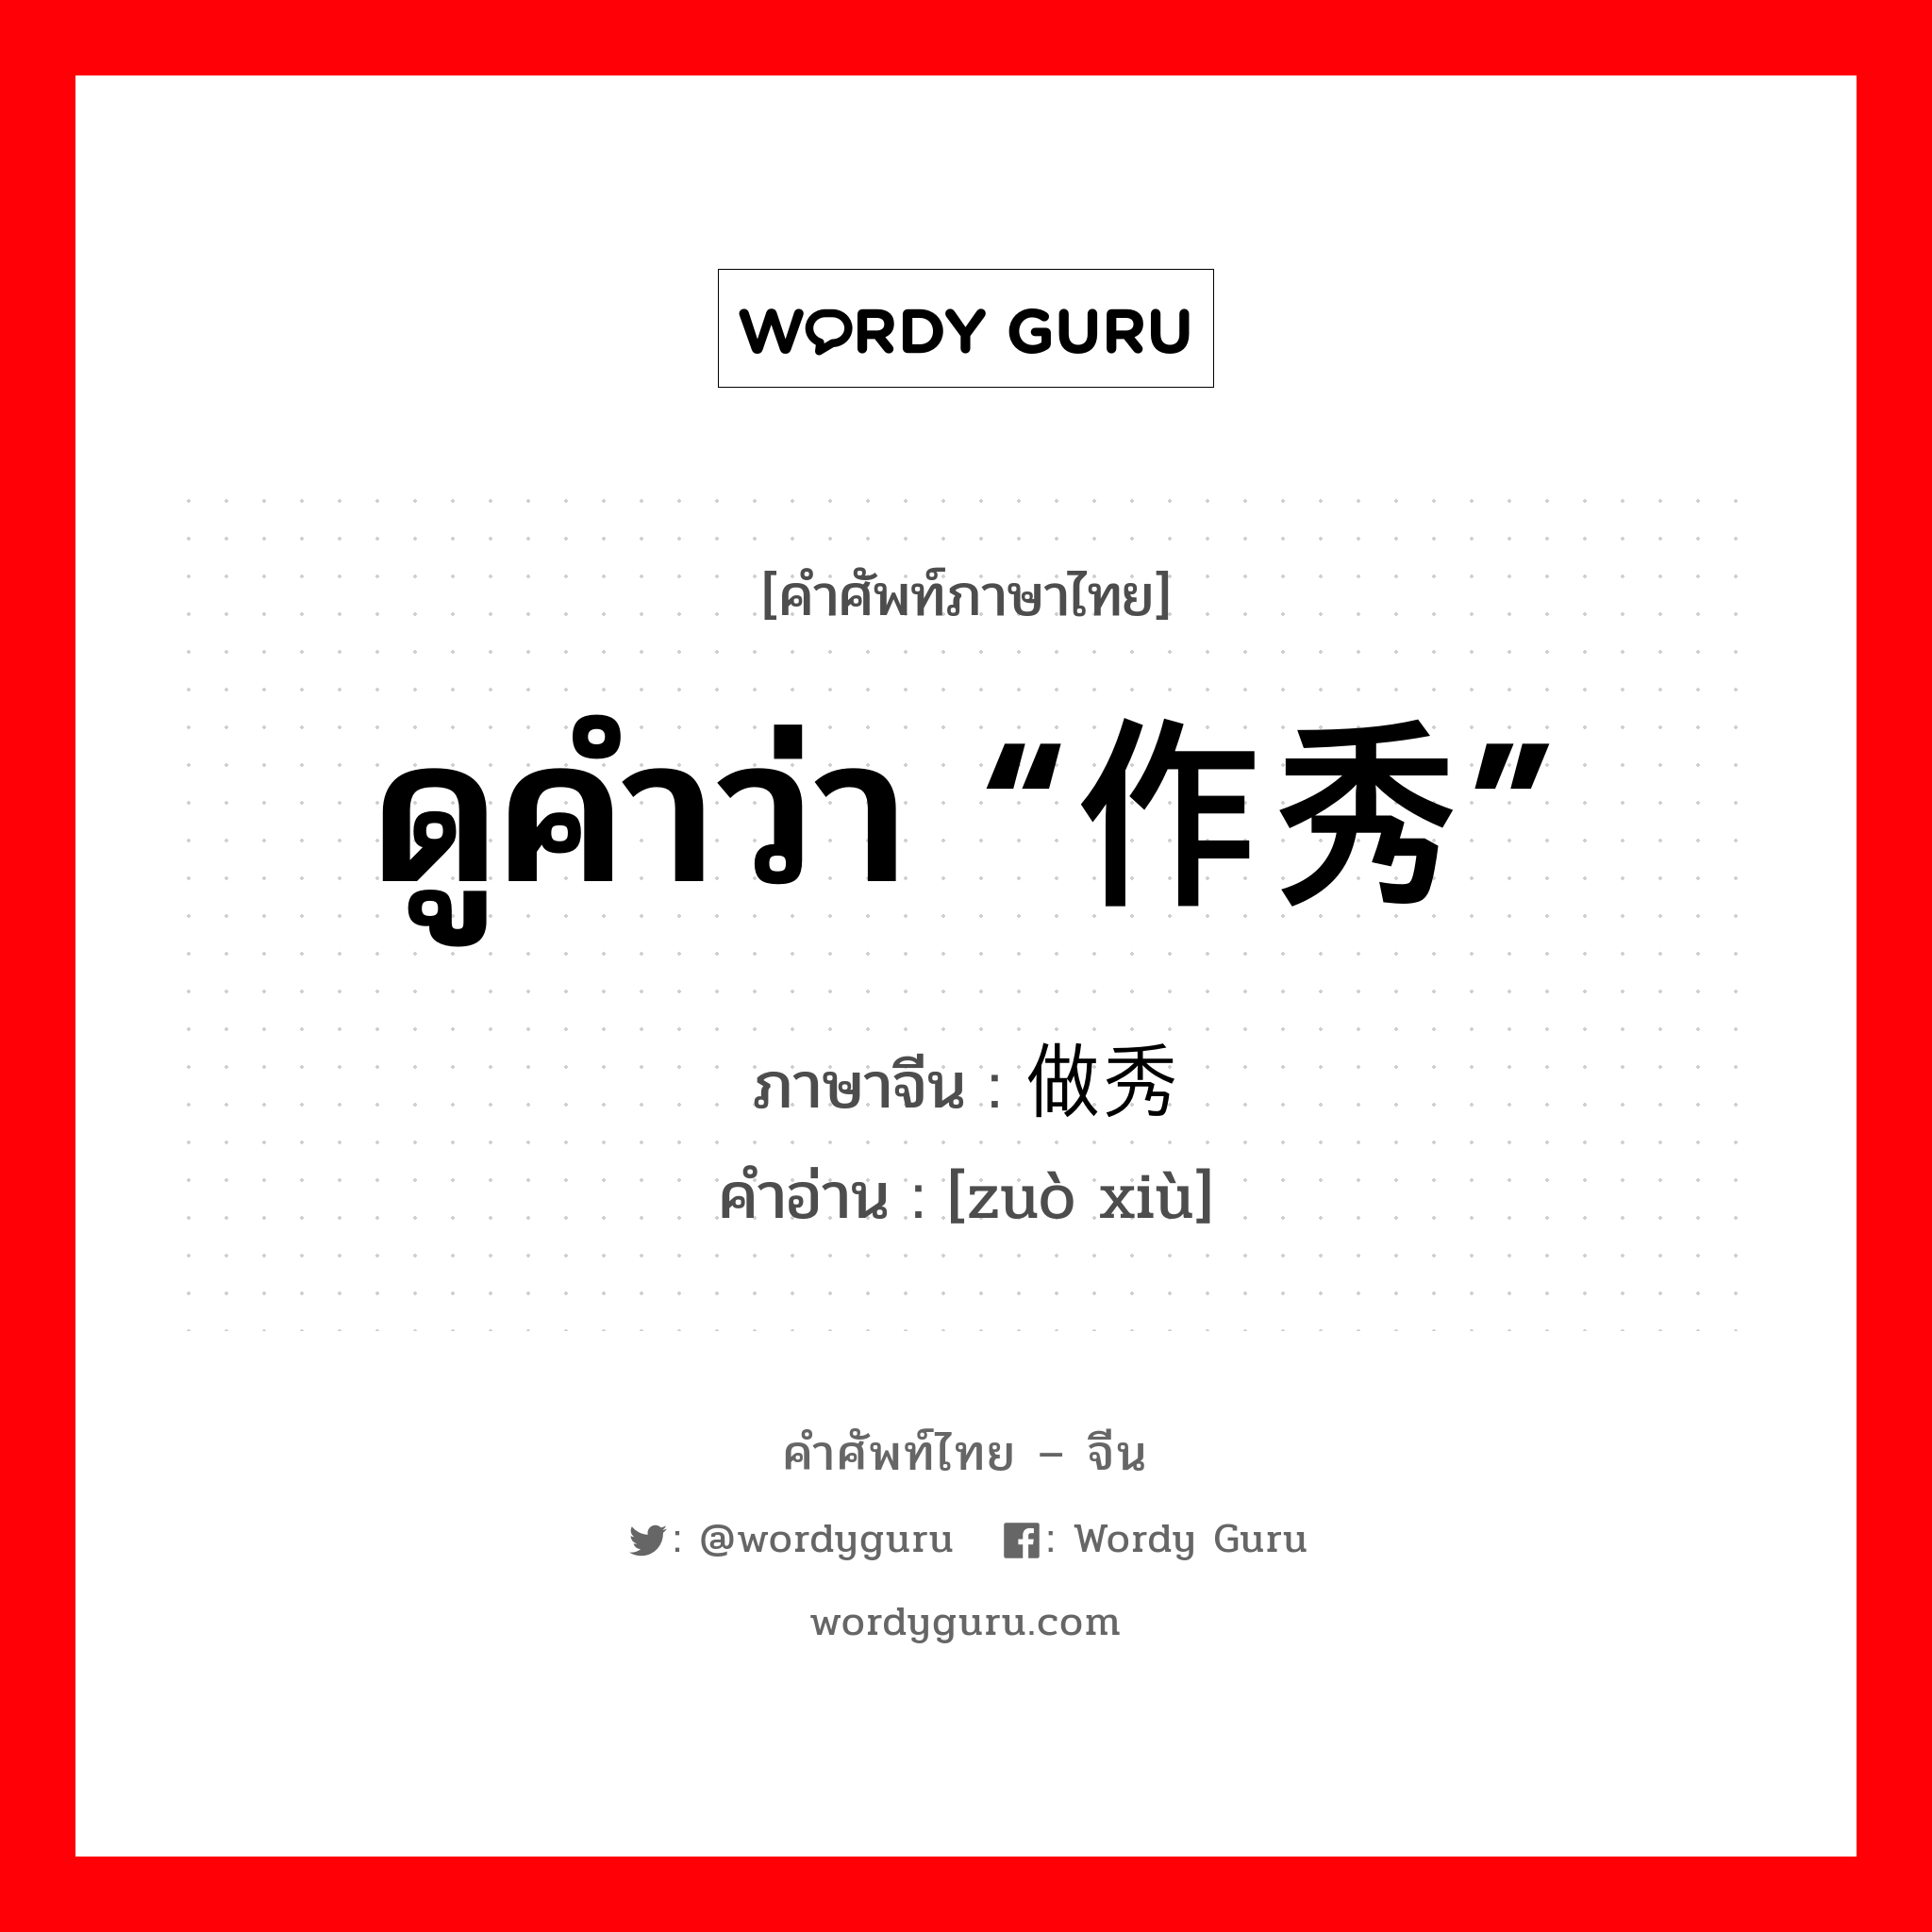 ดูคำว่า “作秀” ภาษาจีนคืออะไร, คำศัพท์ภาษาไทย - จีน ดูคำว่า “作秀” ภาษาจีน 做秀 คำอ่าน [zuò xiù]